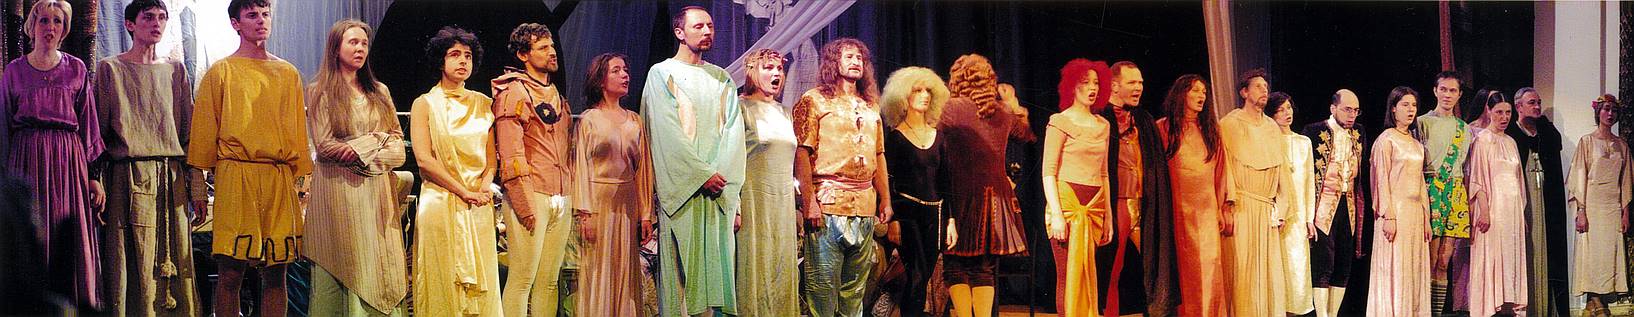 Театр старинной музыки, 2005 год: финал юбилейного концерта, посвященного 25-летию ТСМ